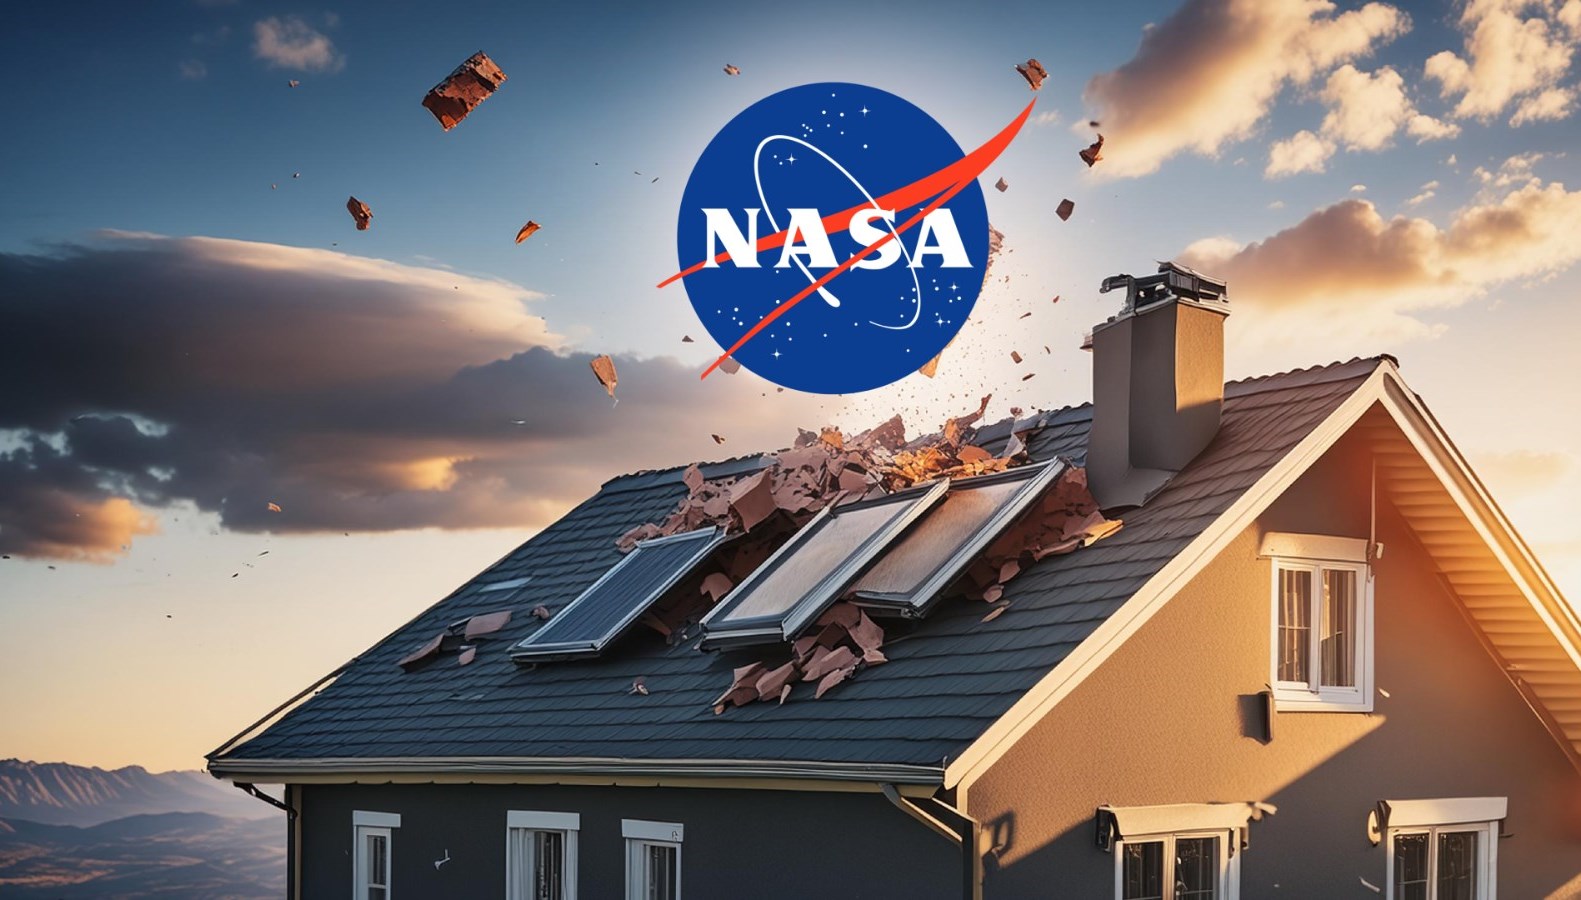 Florida’da bir eve uzaydan enkaz düştü: Aile NASA’dan tazminat talep etti